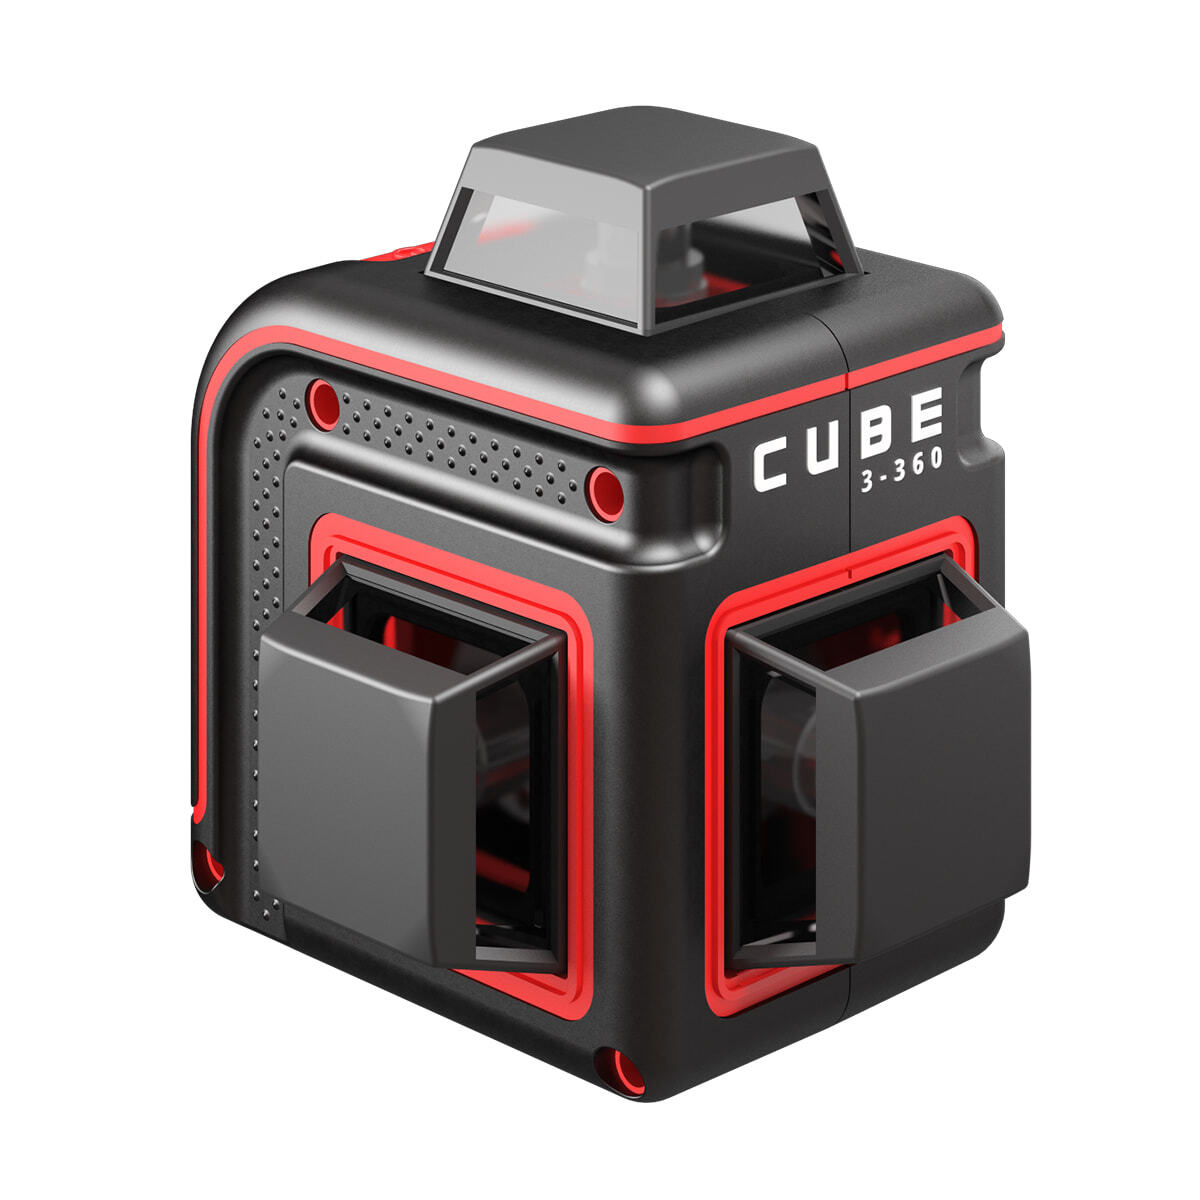 Уровень 360 игра. Лазерный уровень ada Cube 3-360 Home Edition а00565. Нивелир лазерный ada Cube 360 professional Edition. Лазерный уровень ada Cube 360 Basic Edition. Лазерный уровень ada Cube 3-360 Green Basic Edition.